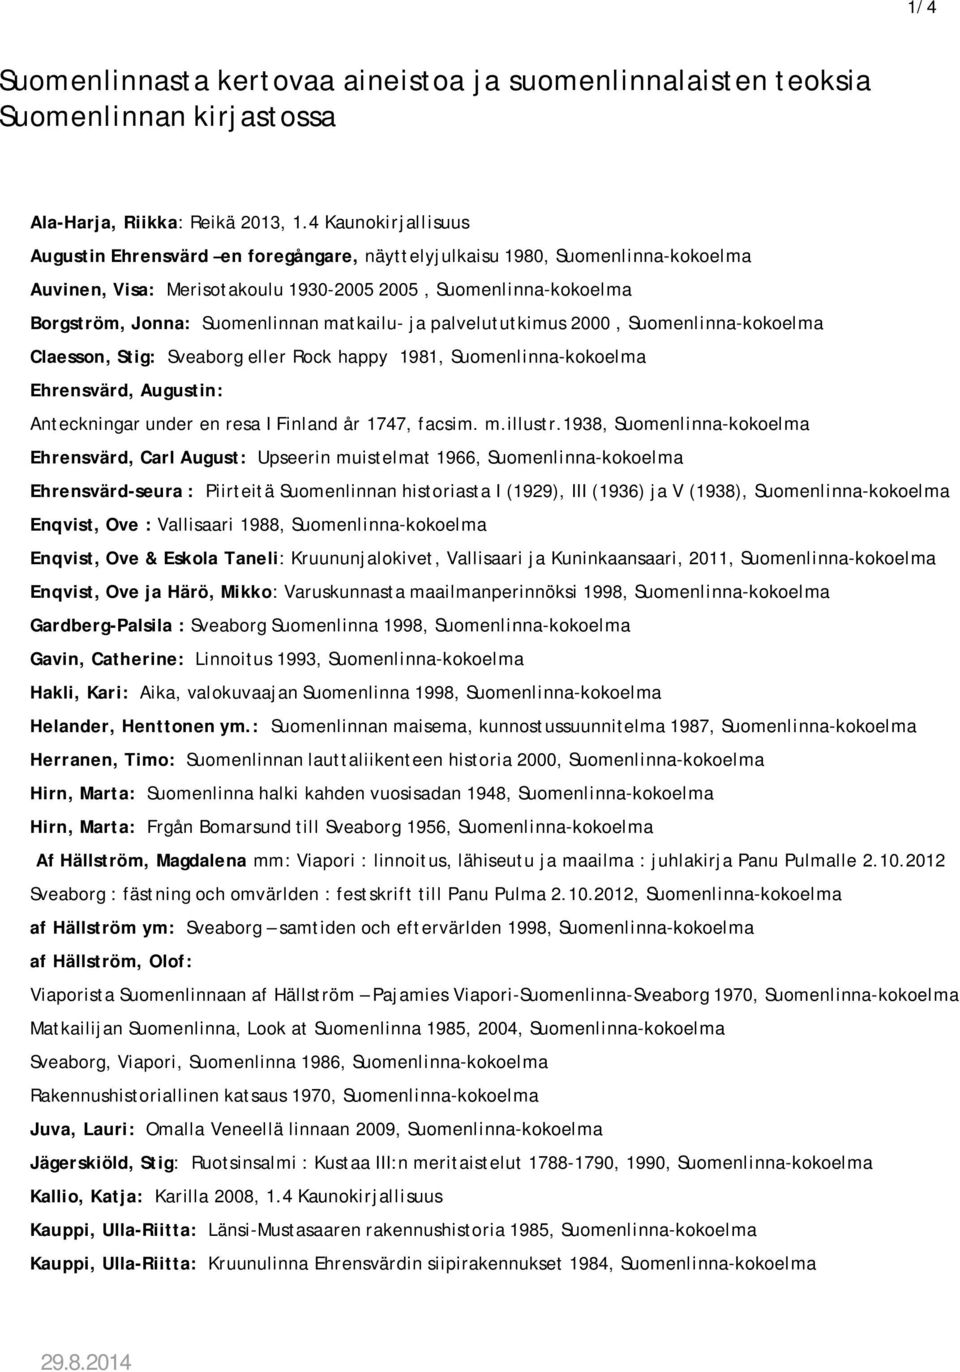 matkailu- ja palvelututkimus 2000, Suomenlinna-kokoelma Claesson, Stig: Sveaborg eller Rock happy 1981, Suomenlinna-kokoelma Ehrensvärd, Augustin: Anteckningar under en resa I Finland år 1747, facsim.